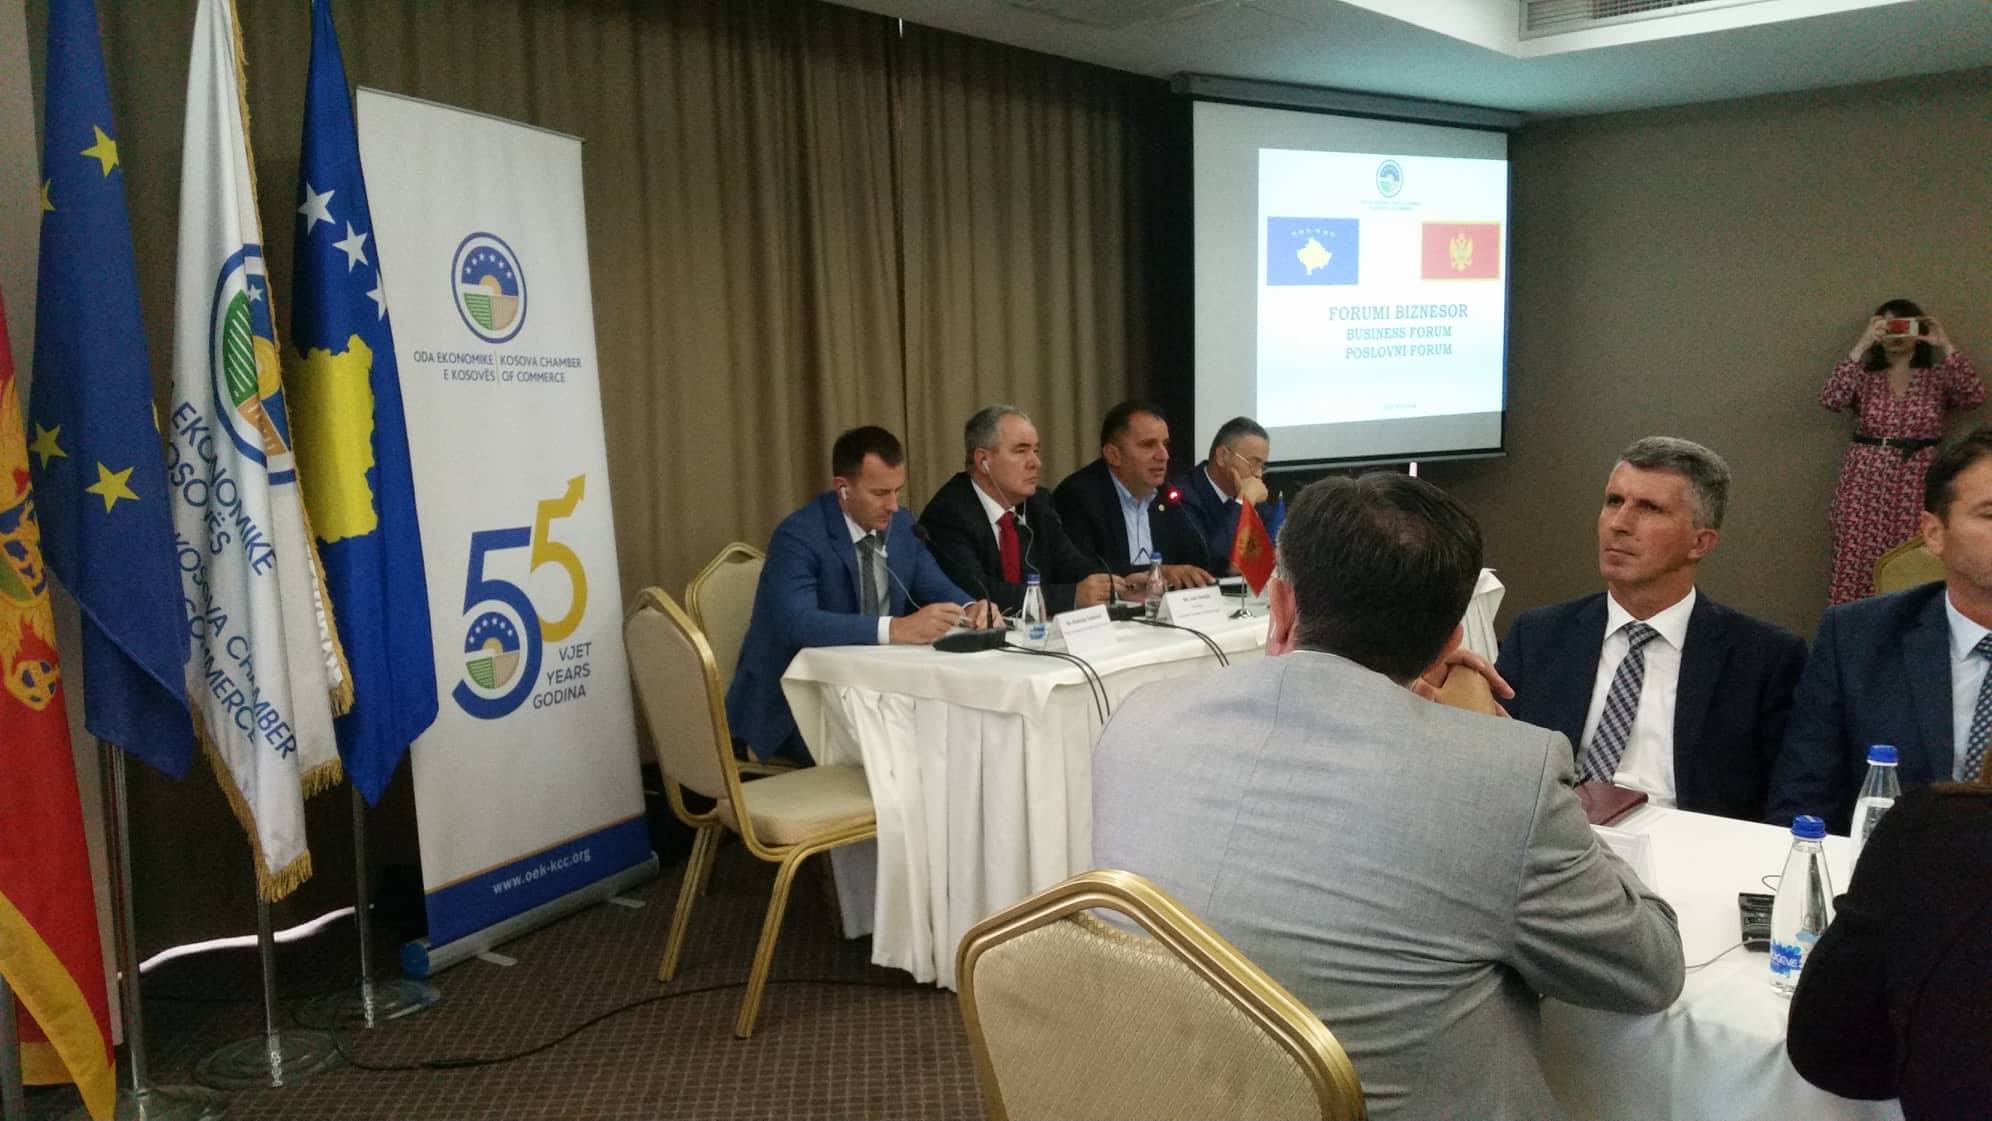 Forum Ekonomik: “Bashkepunimi ekonomik i sipermarrjes shqiptare – sfidat e integrimit ekonomik”